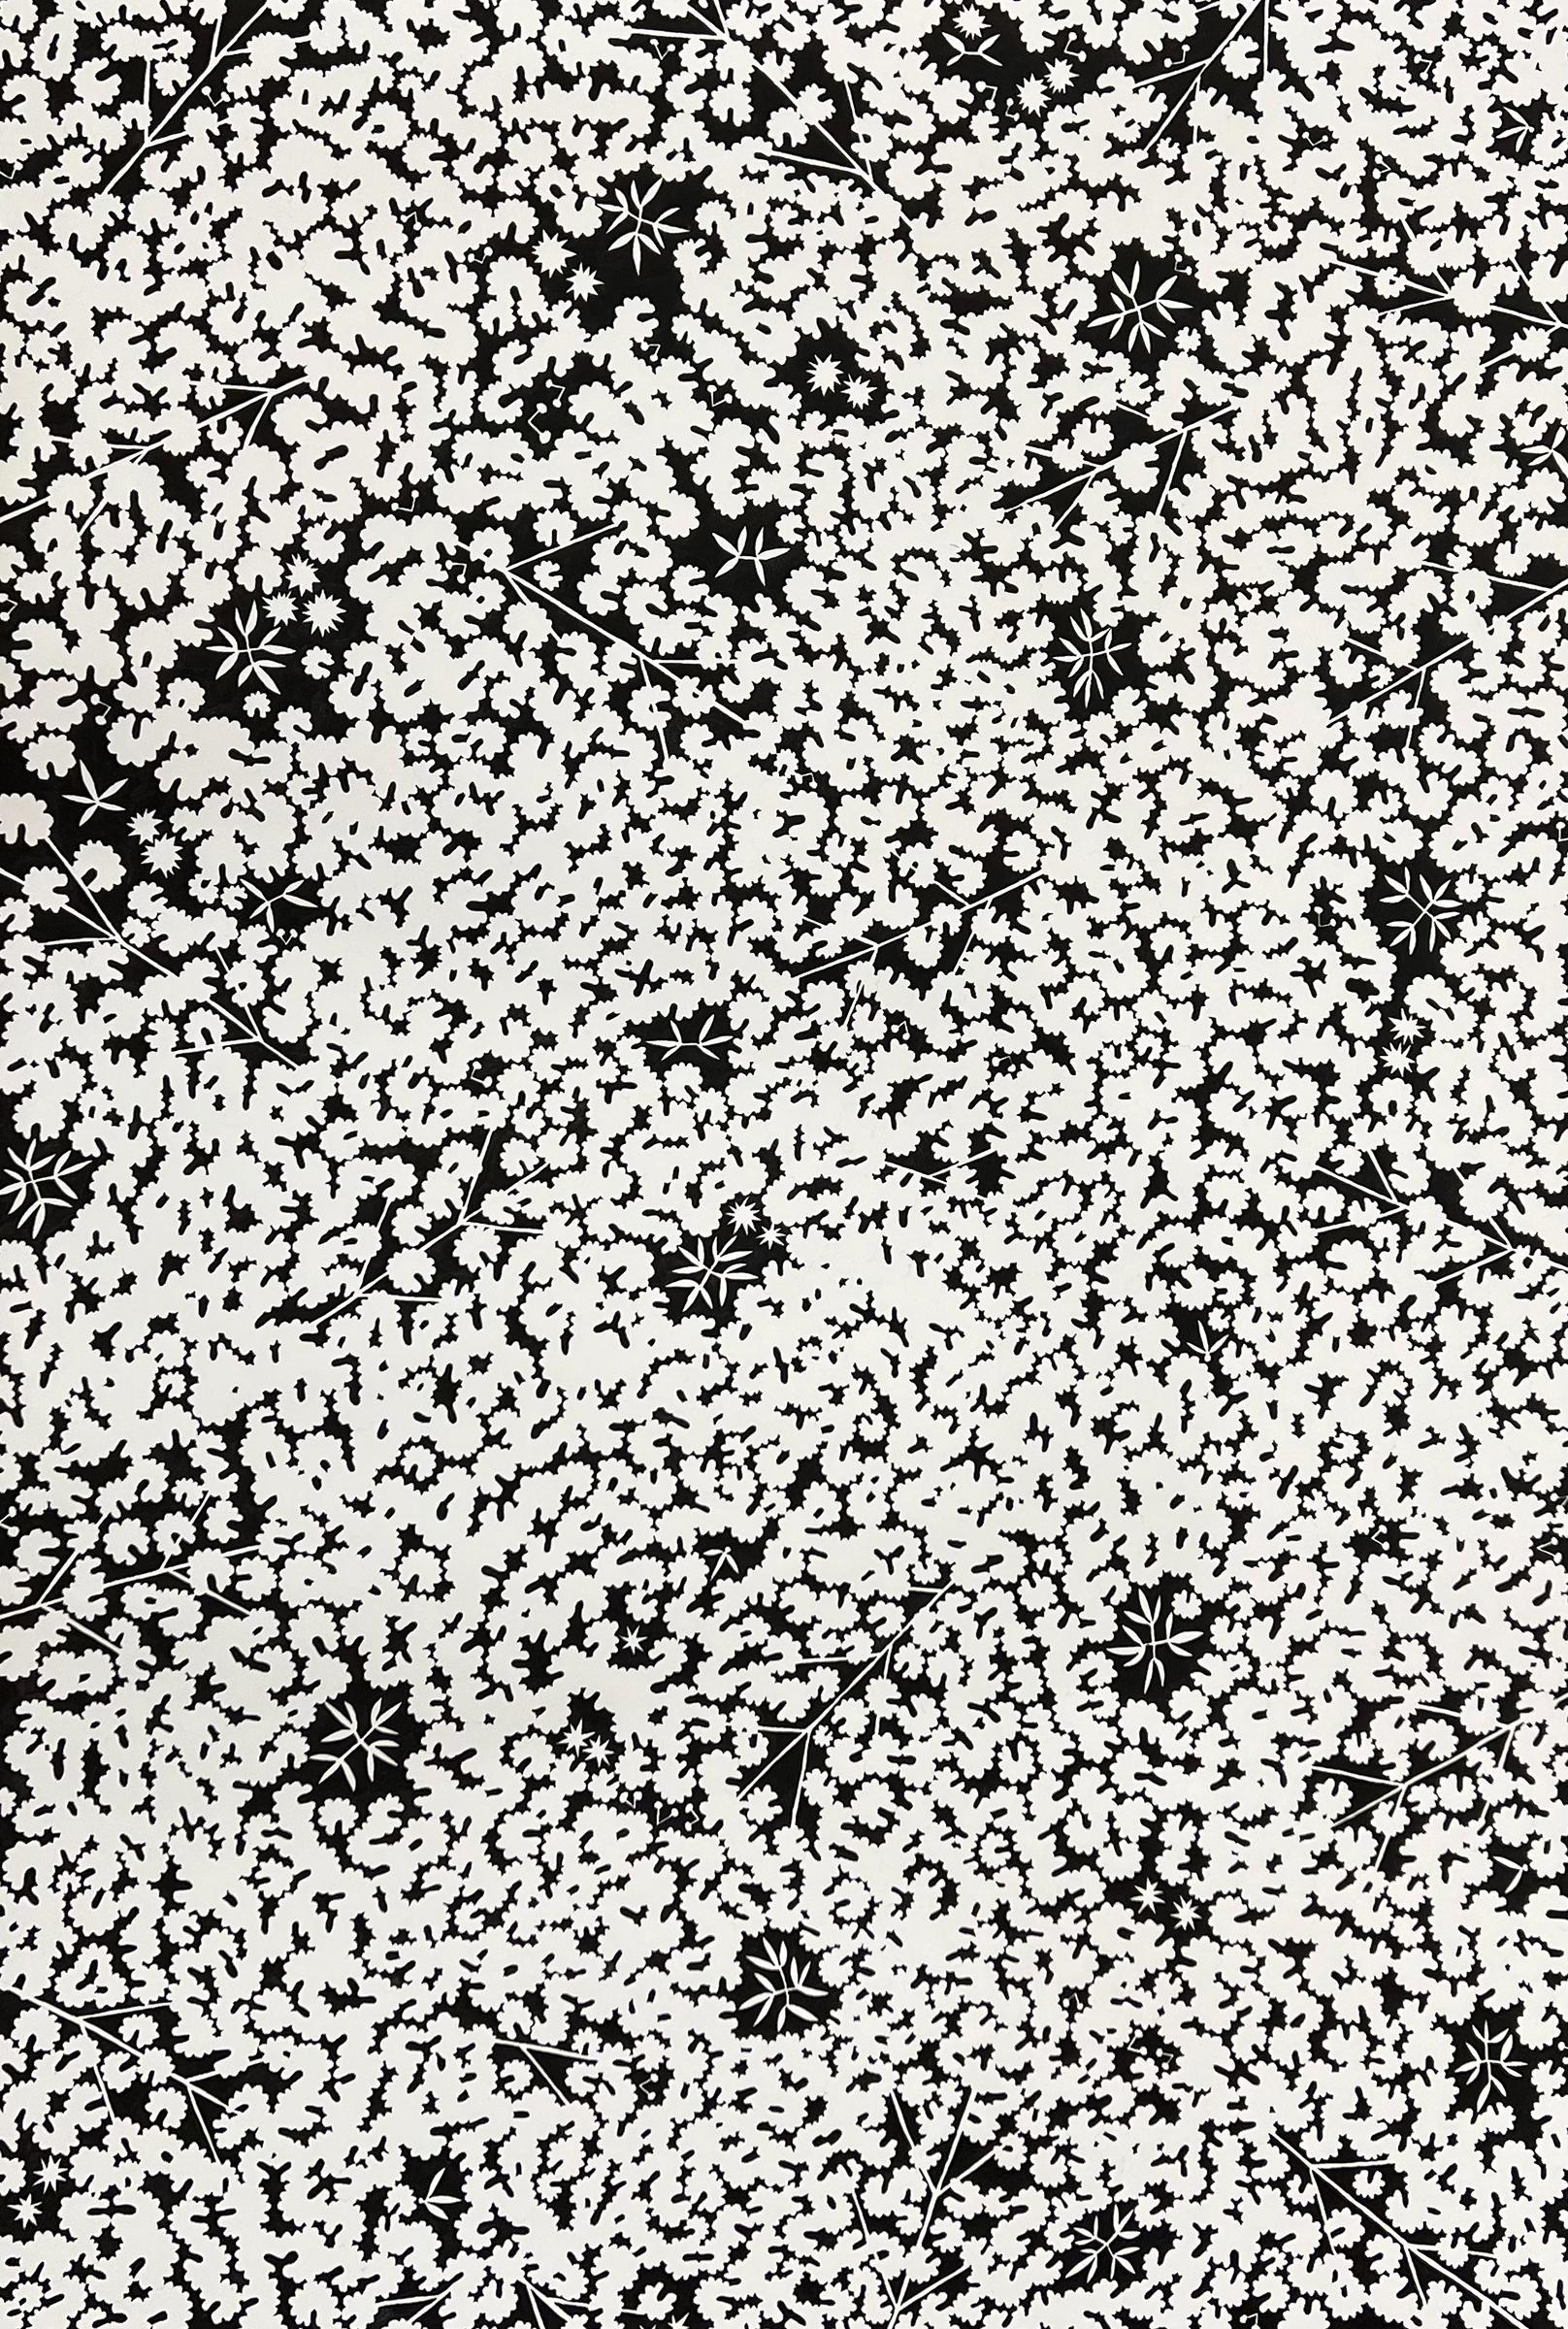 ""Groundcover No. 4"" - schwarz-weiße Tuschezeichnung - botanisch